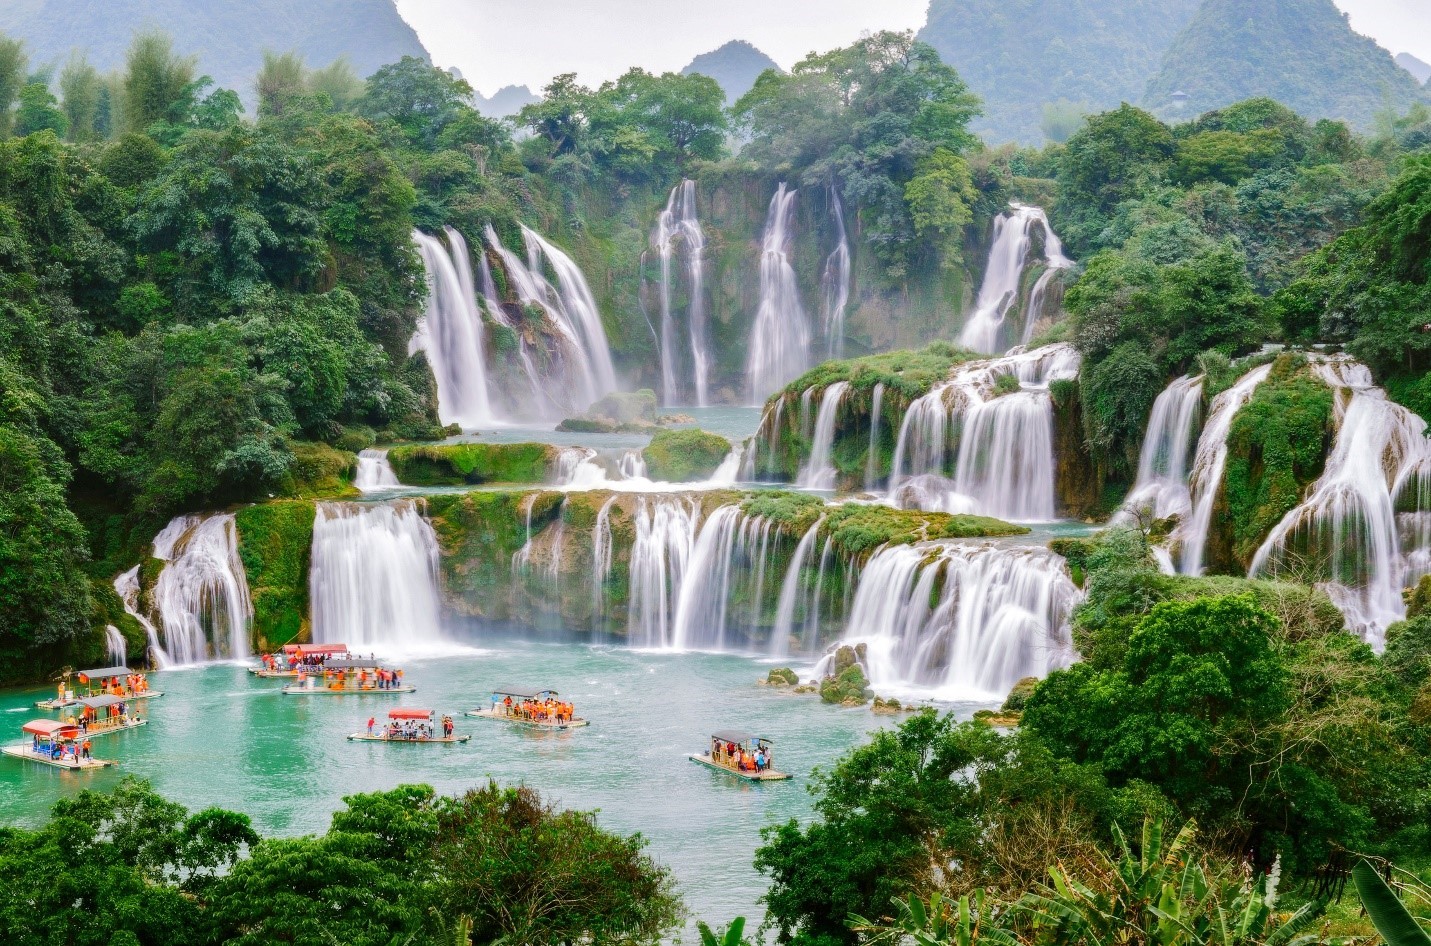 Thác nước đẹp mê hồn ở Cao Bằng, nước đổ từ độ cao hơn 60m, màu cầu vồng tỏa hào quang rừng nguyên sinh- Ảnh 2.